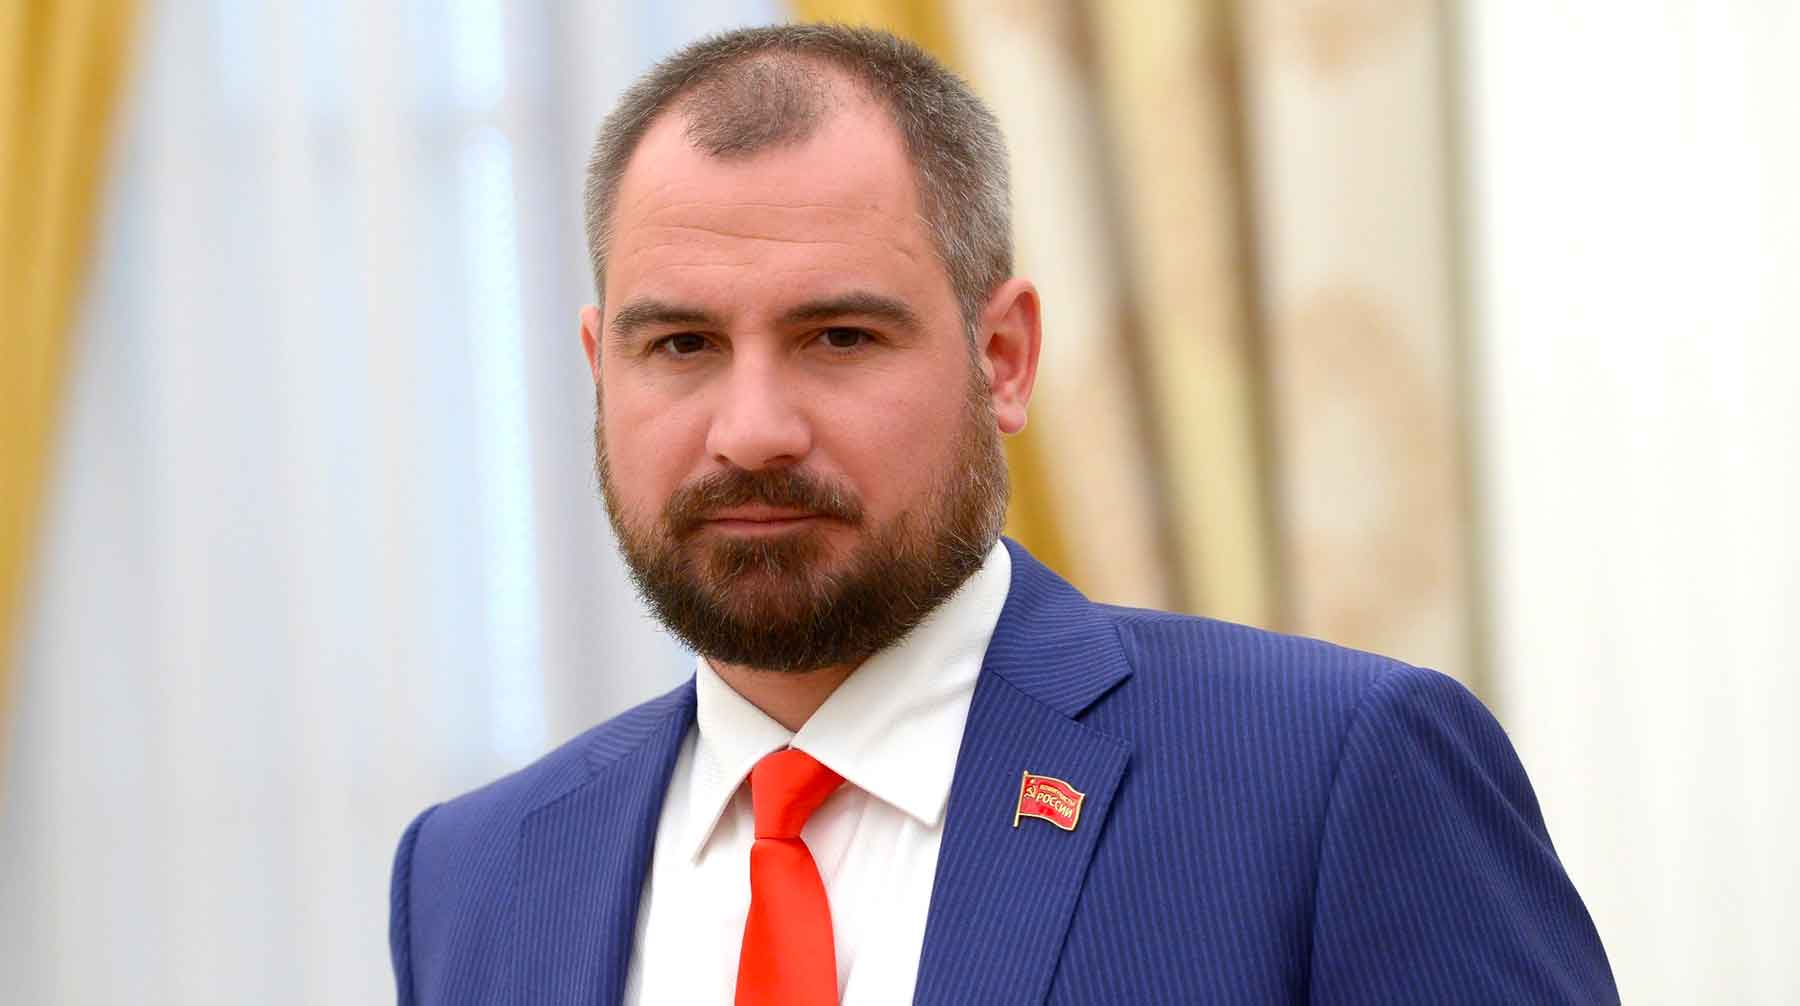 ЦК КПКР предложила всем «честным коммунистам» в Мосгордуме сдать свои мандаты Максим Сурайкин